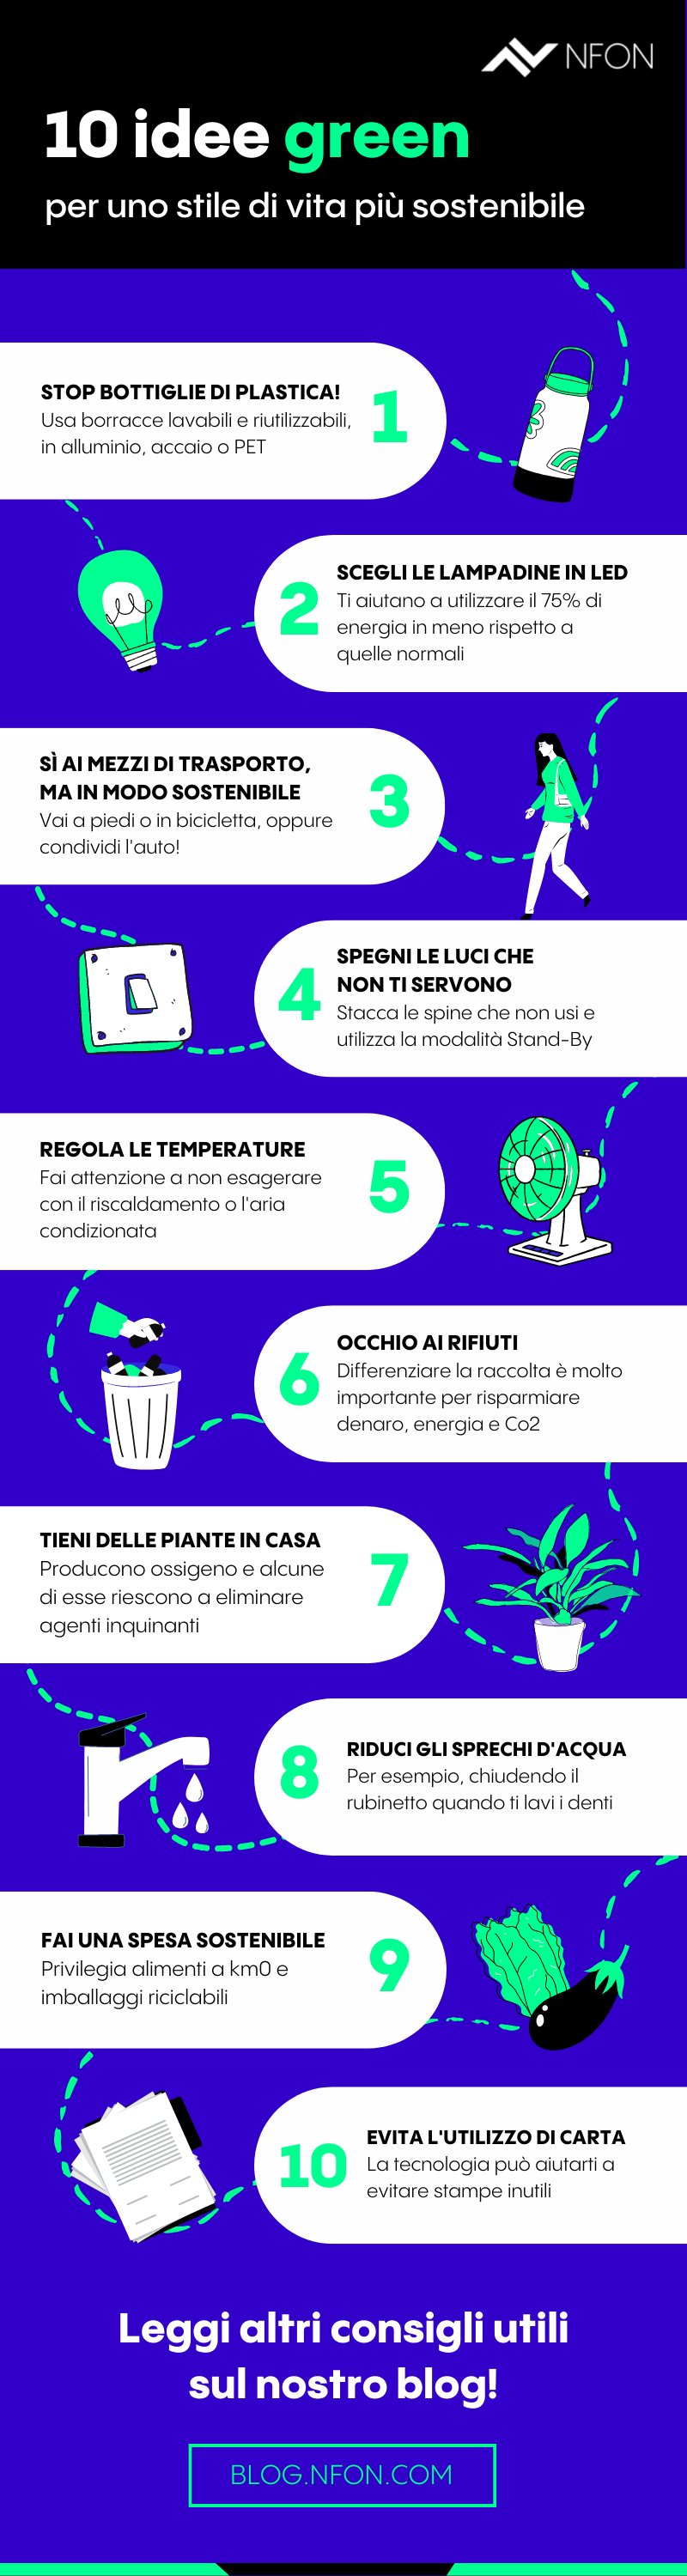 10-idee-green-sostenibili-innovative-stile-vita-sostenibile-infografica